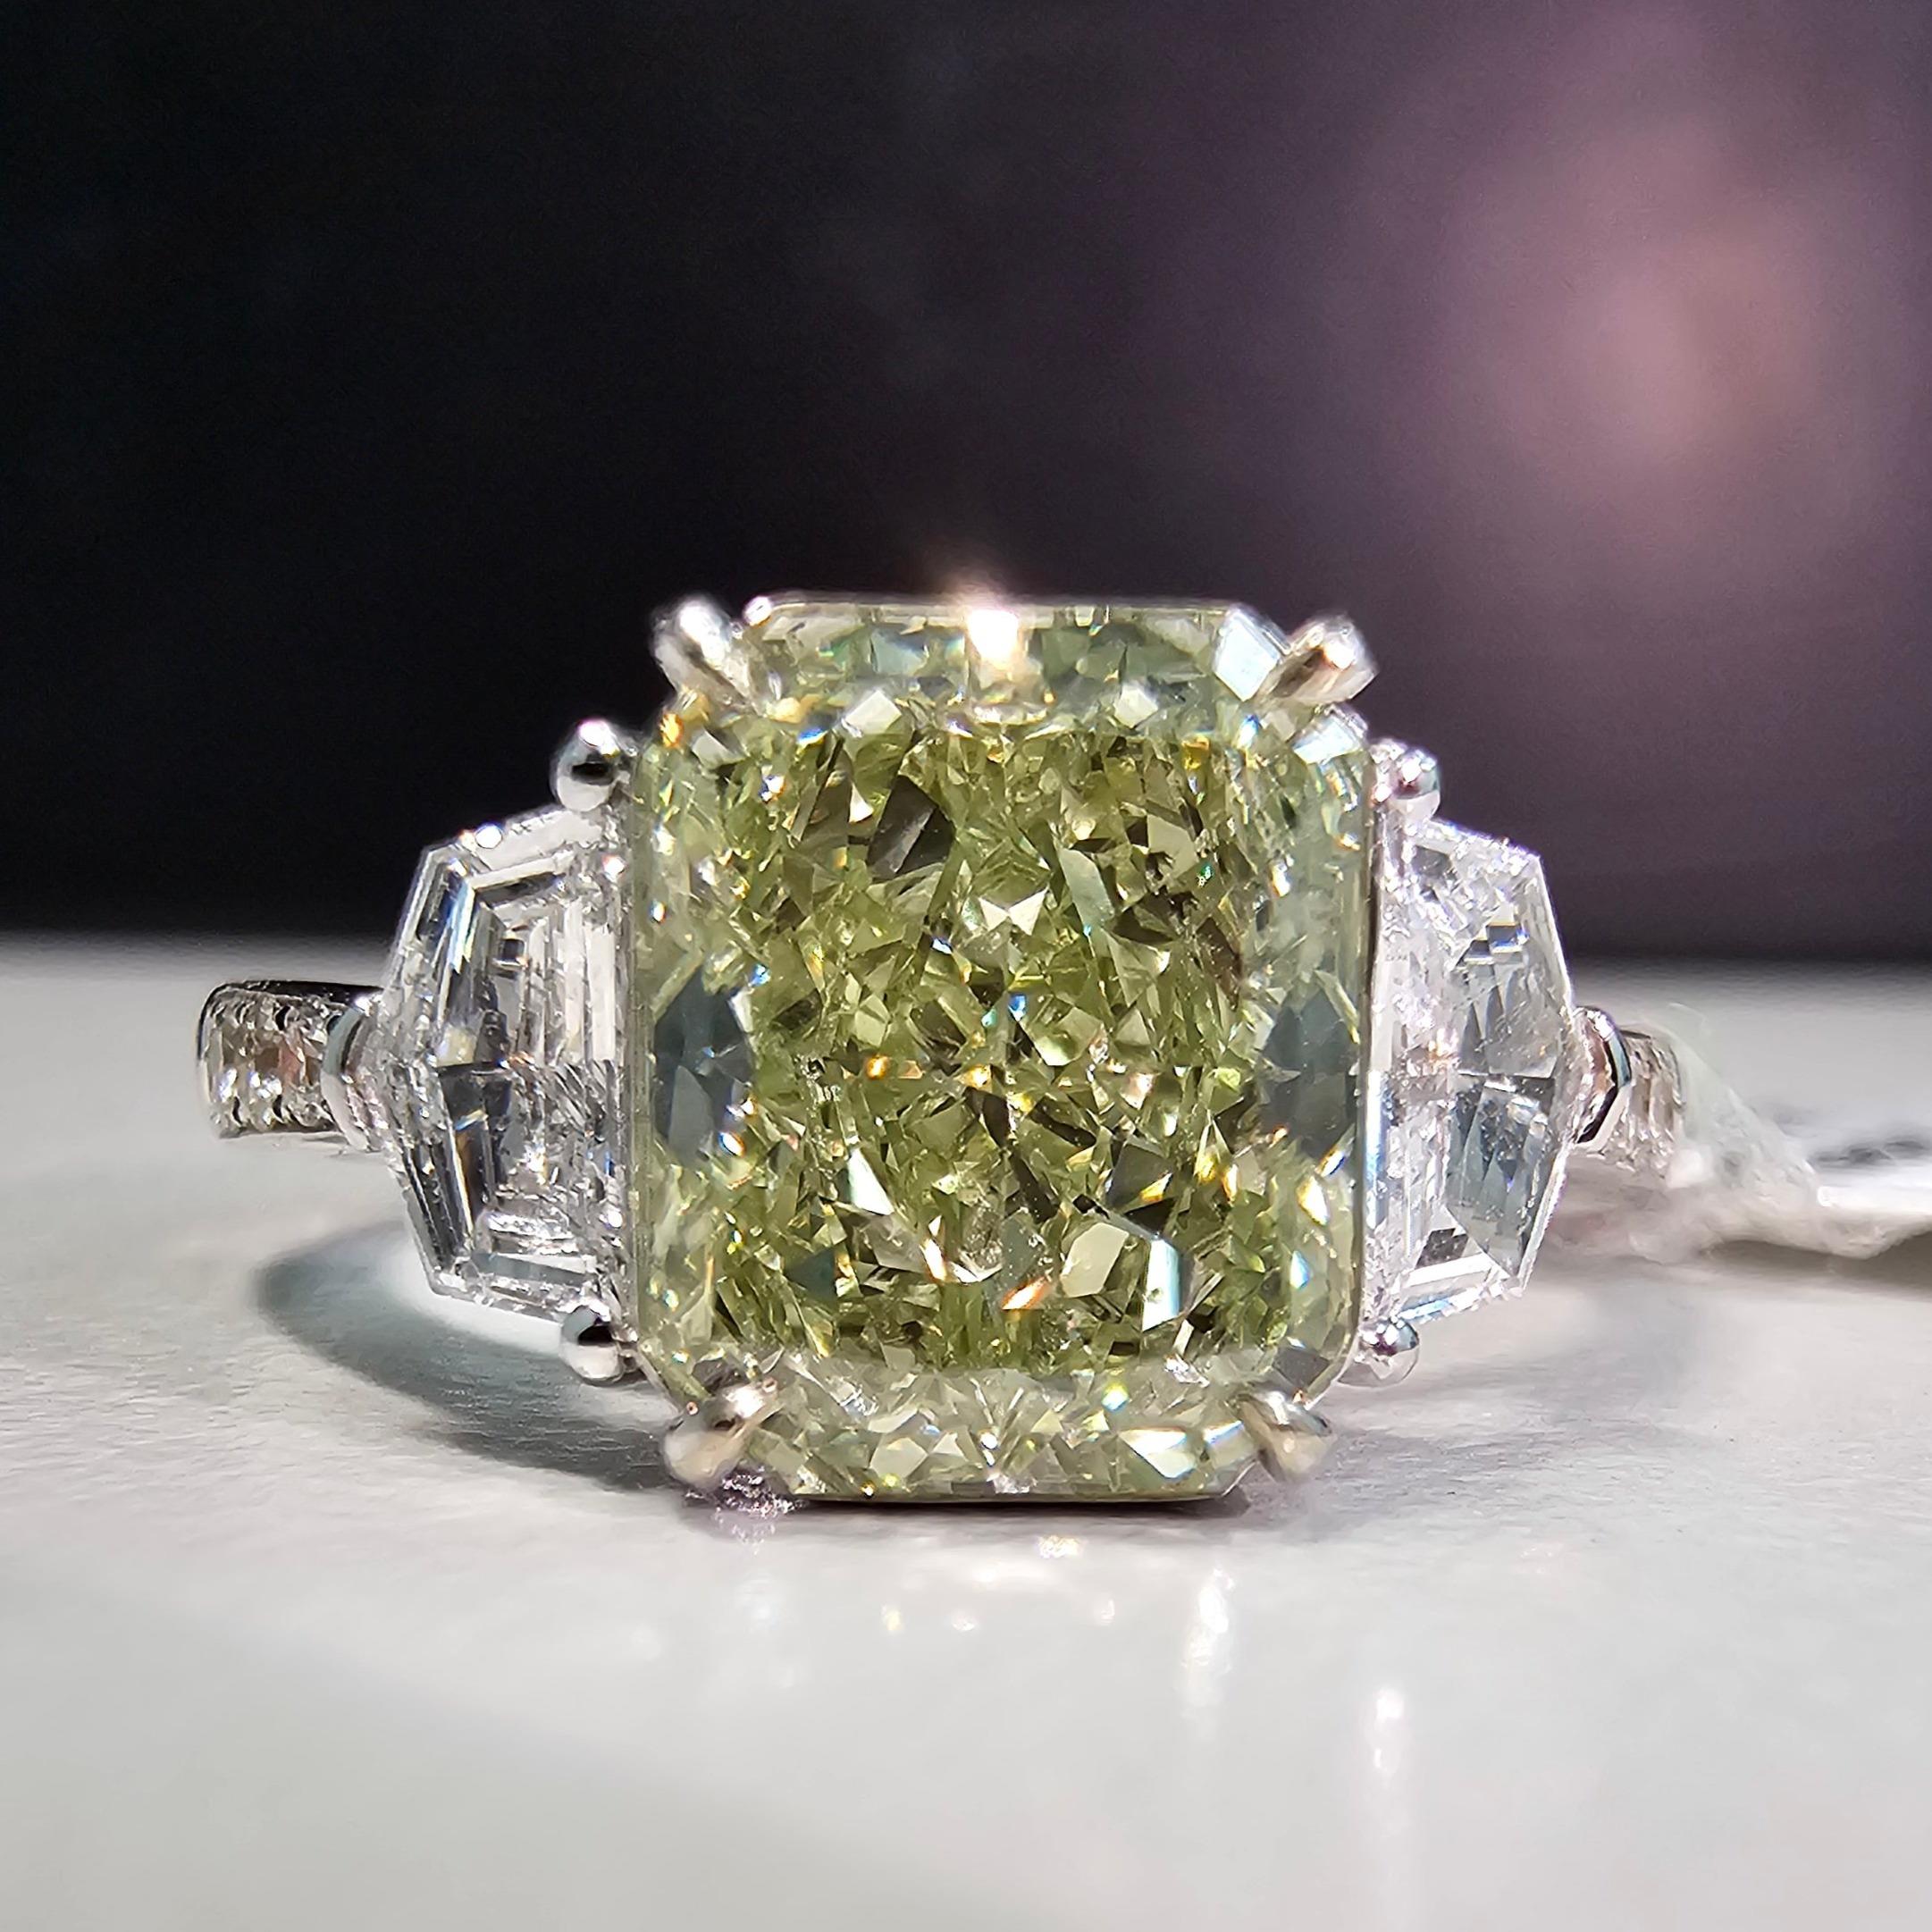 Unsere neue Linie von Diamanten mit einem Hauch von Grün in einem Ring mit grüner Emaille unter dem Diamanten, um ihn als reinen grünen Diamanten erscheinen zu lassen. Der Diamant ist 100% natürlich und GIA-zertifiziert, aber der Ring ist unterhalb